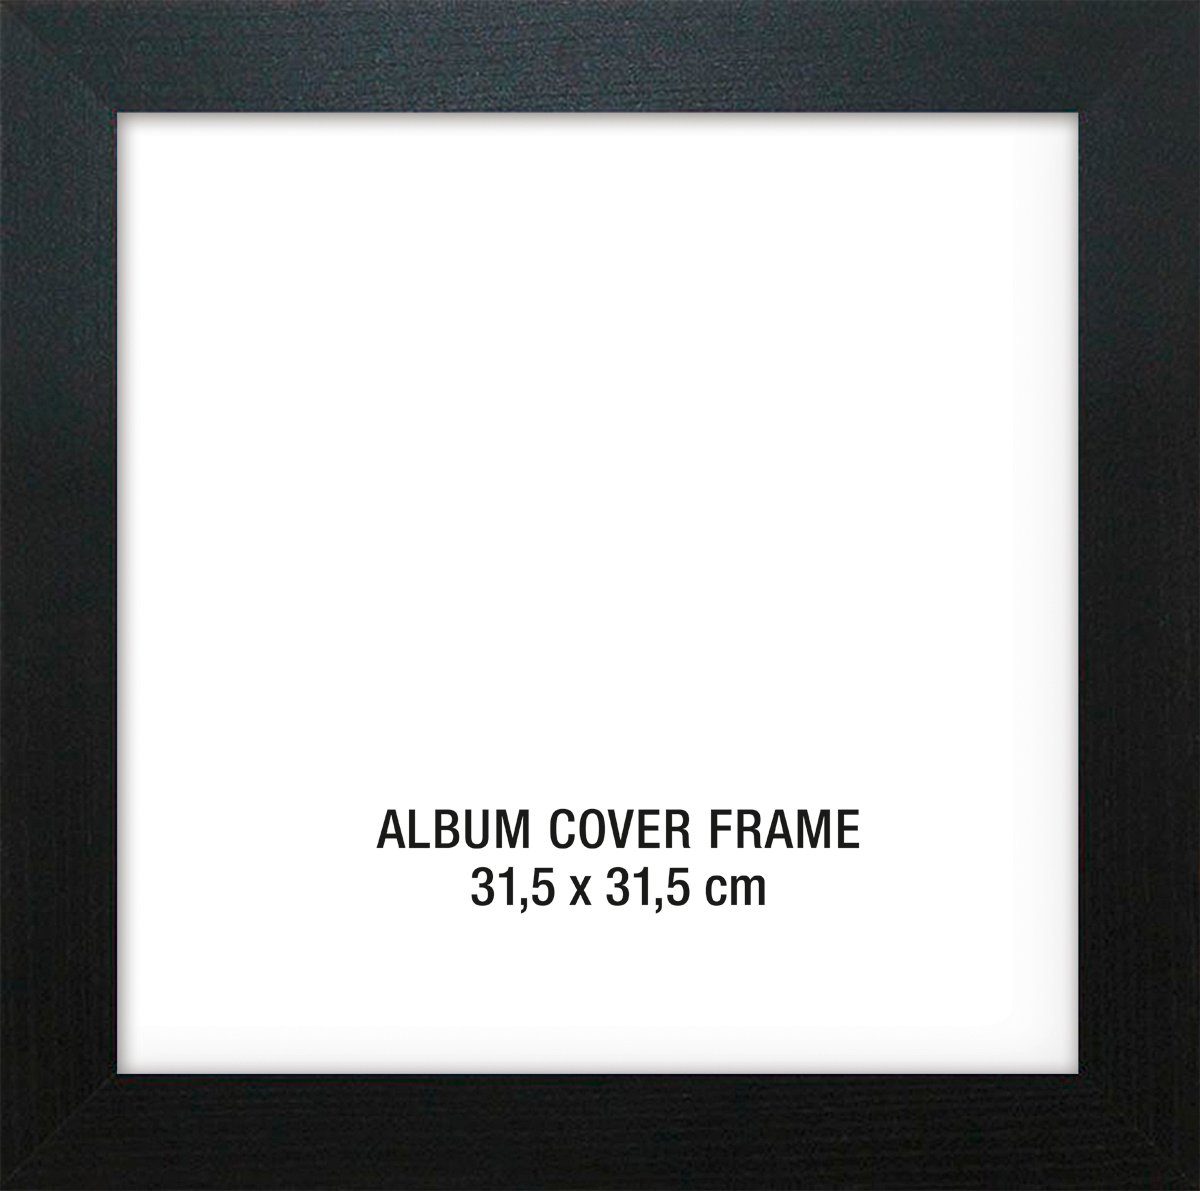 x Up Cover (31,5 31,5 cm) Close Bilderrahmen LP Rahmen Album